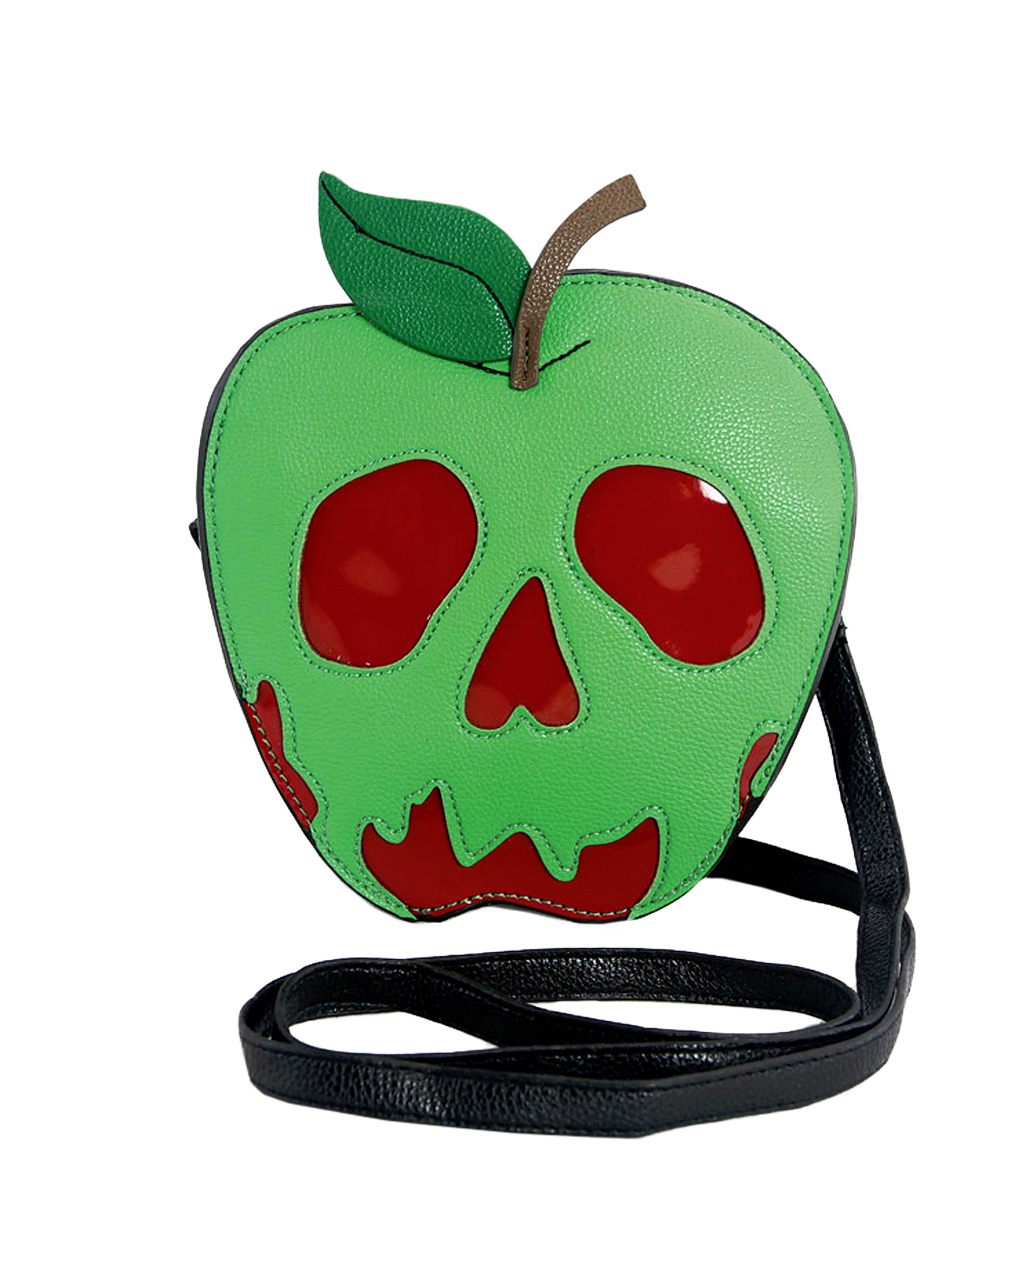 Vergifteter Apfel Handtasche Vinyl als Kostümzubehör